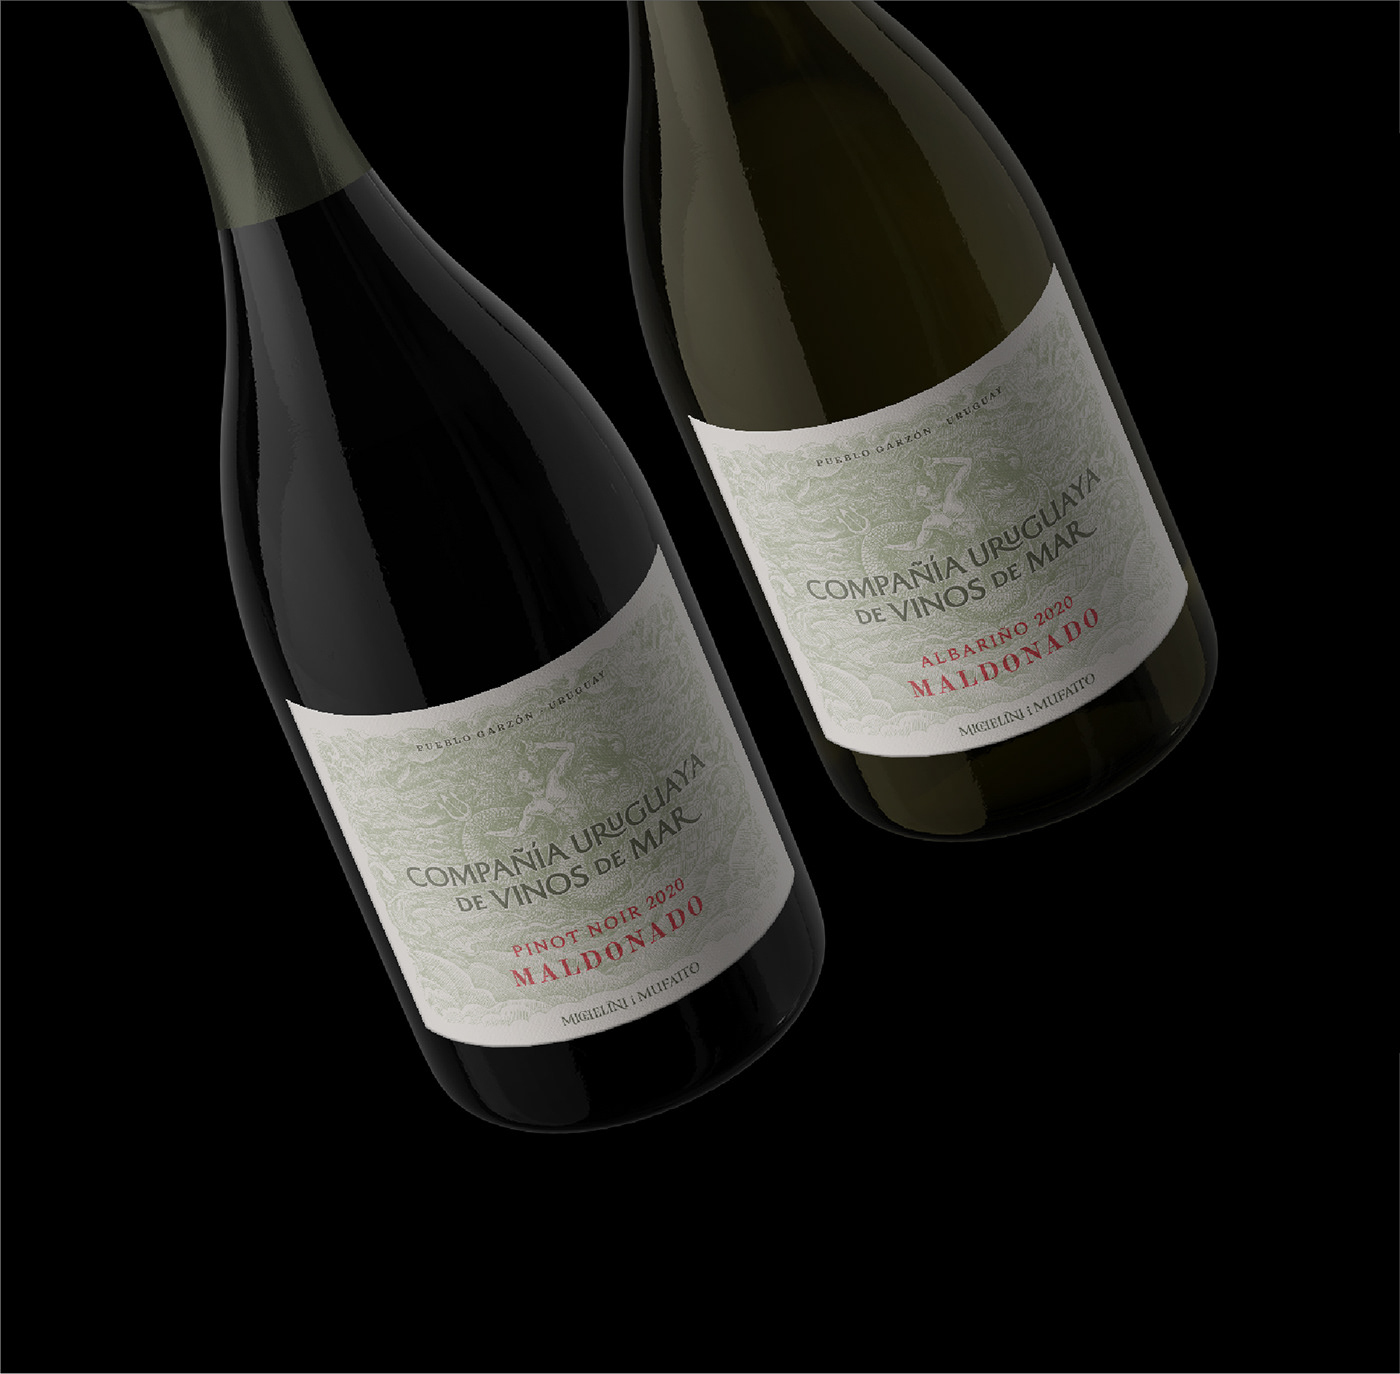 atlantis mitology Ocean poseidon Triton uruguay Vinos vinos de mar wine wine label